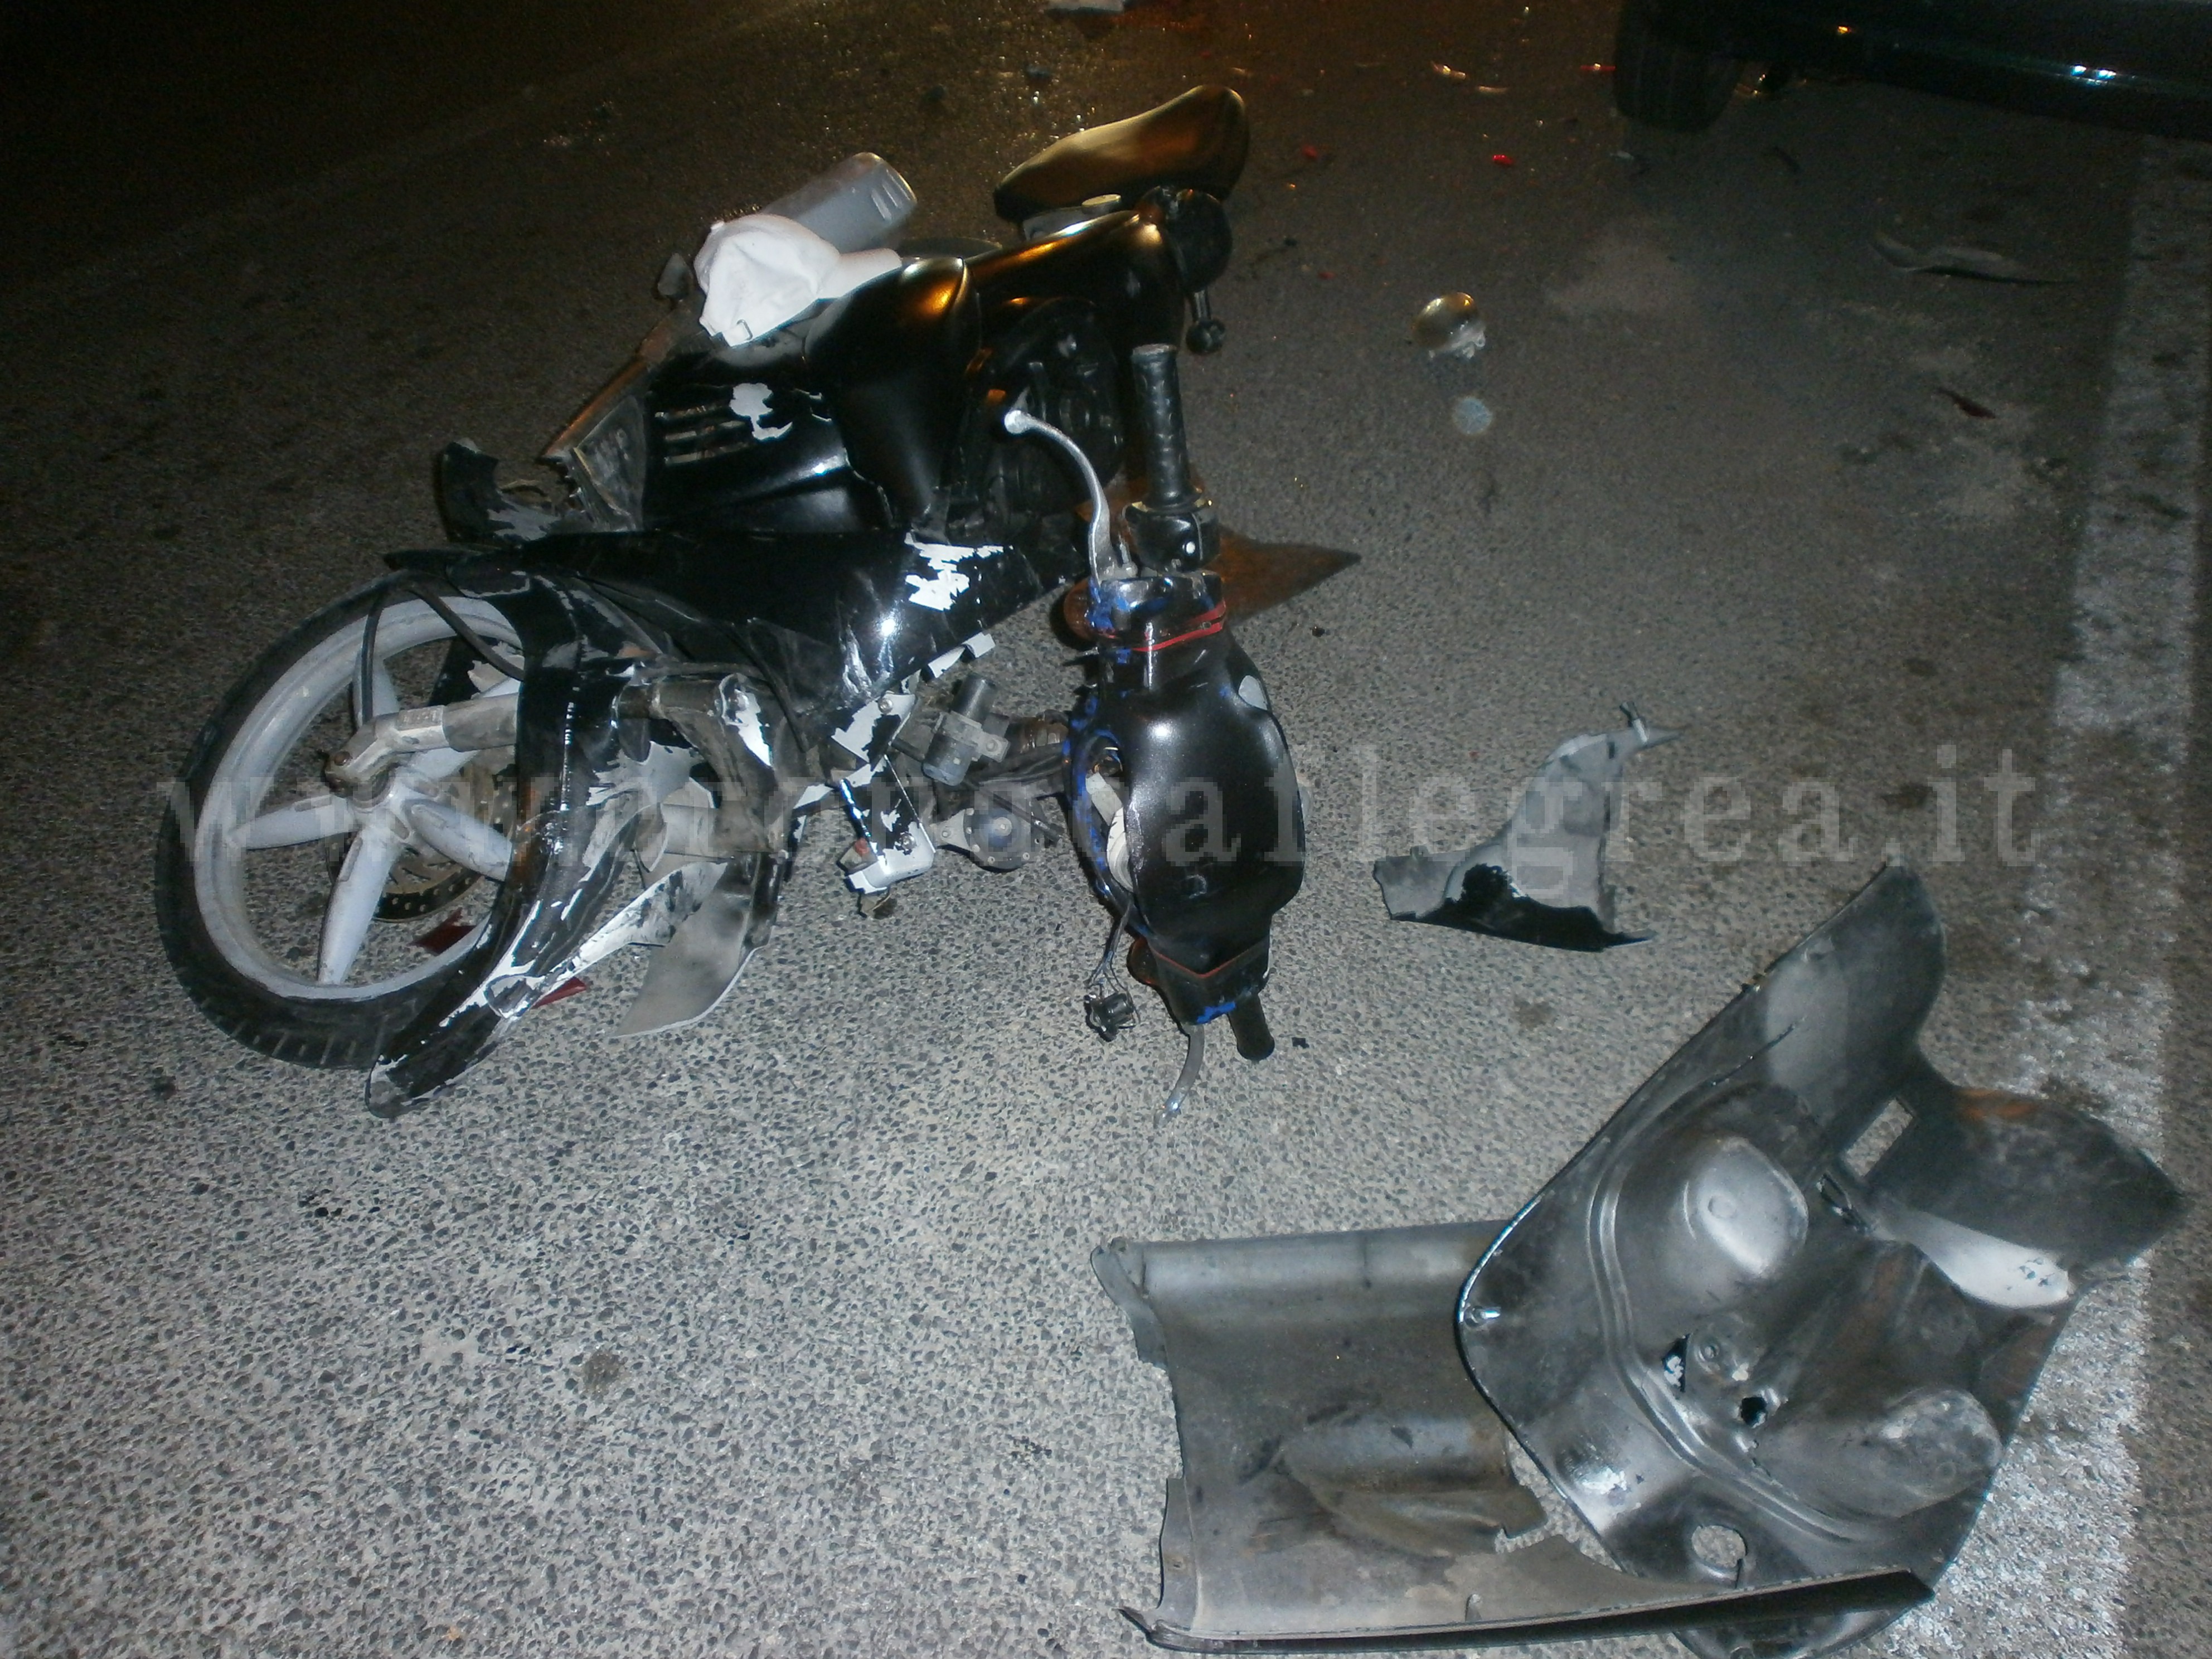 POZZUOLI/ Sangue nella notte, moto si schianta contro un’auto in sosta: 20enne in gravi condizioni – LE FOTO